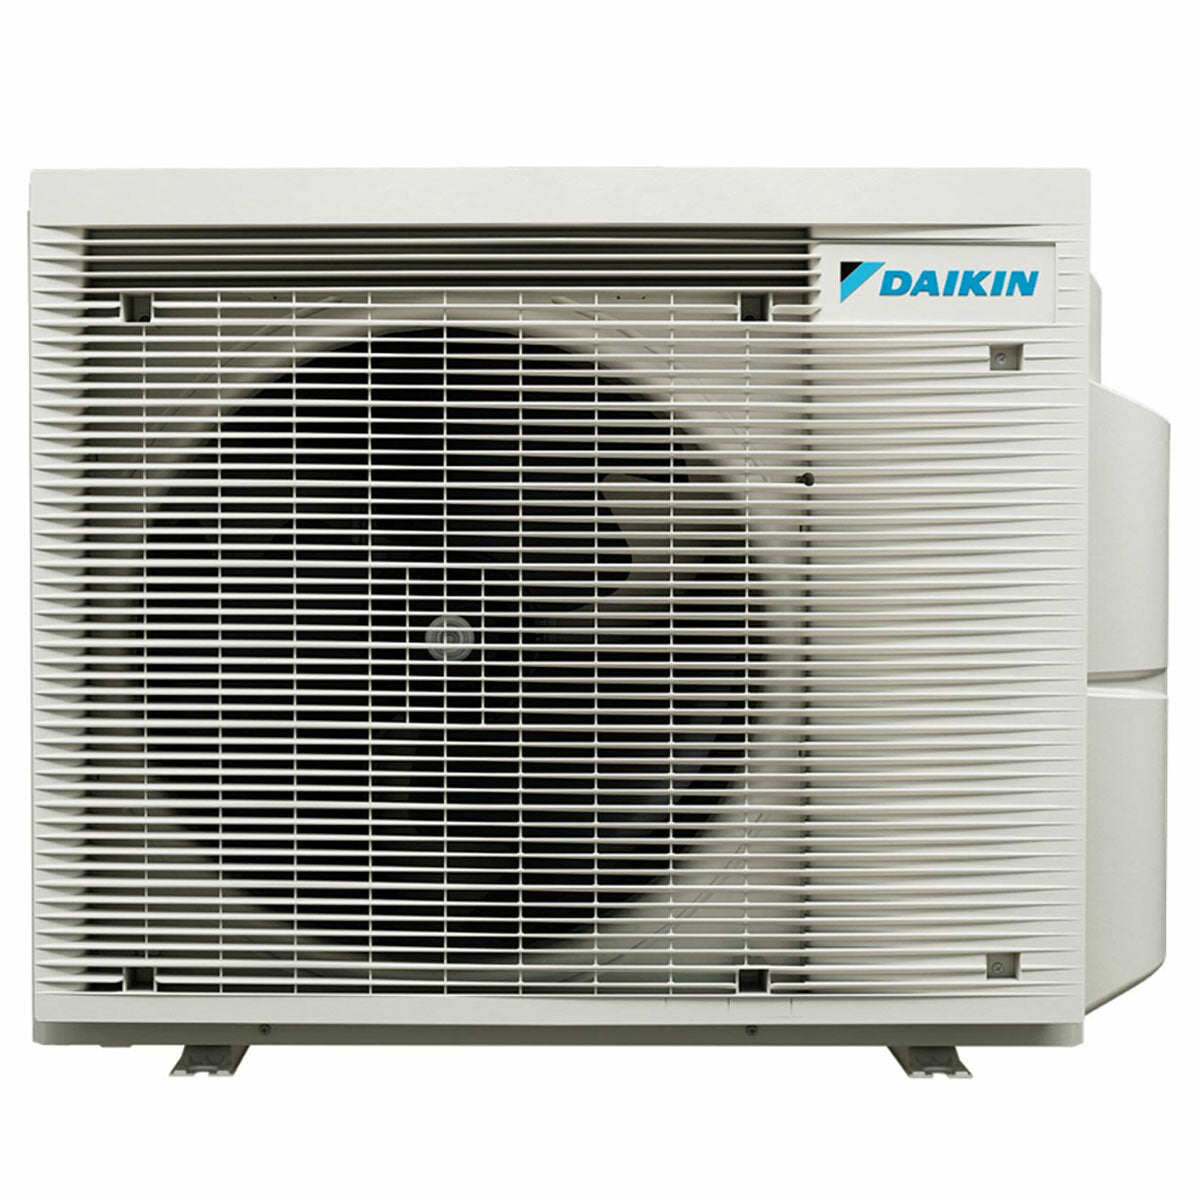 Daikin Emura 3 trial split air conditioner 7000+7000+9000 BTU inverter A++ wifi outdoor unit 4 kW Black